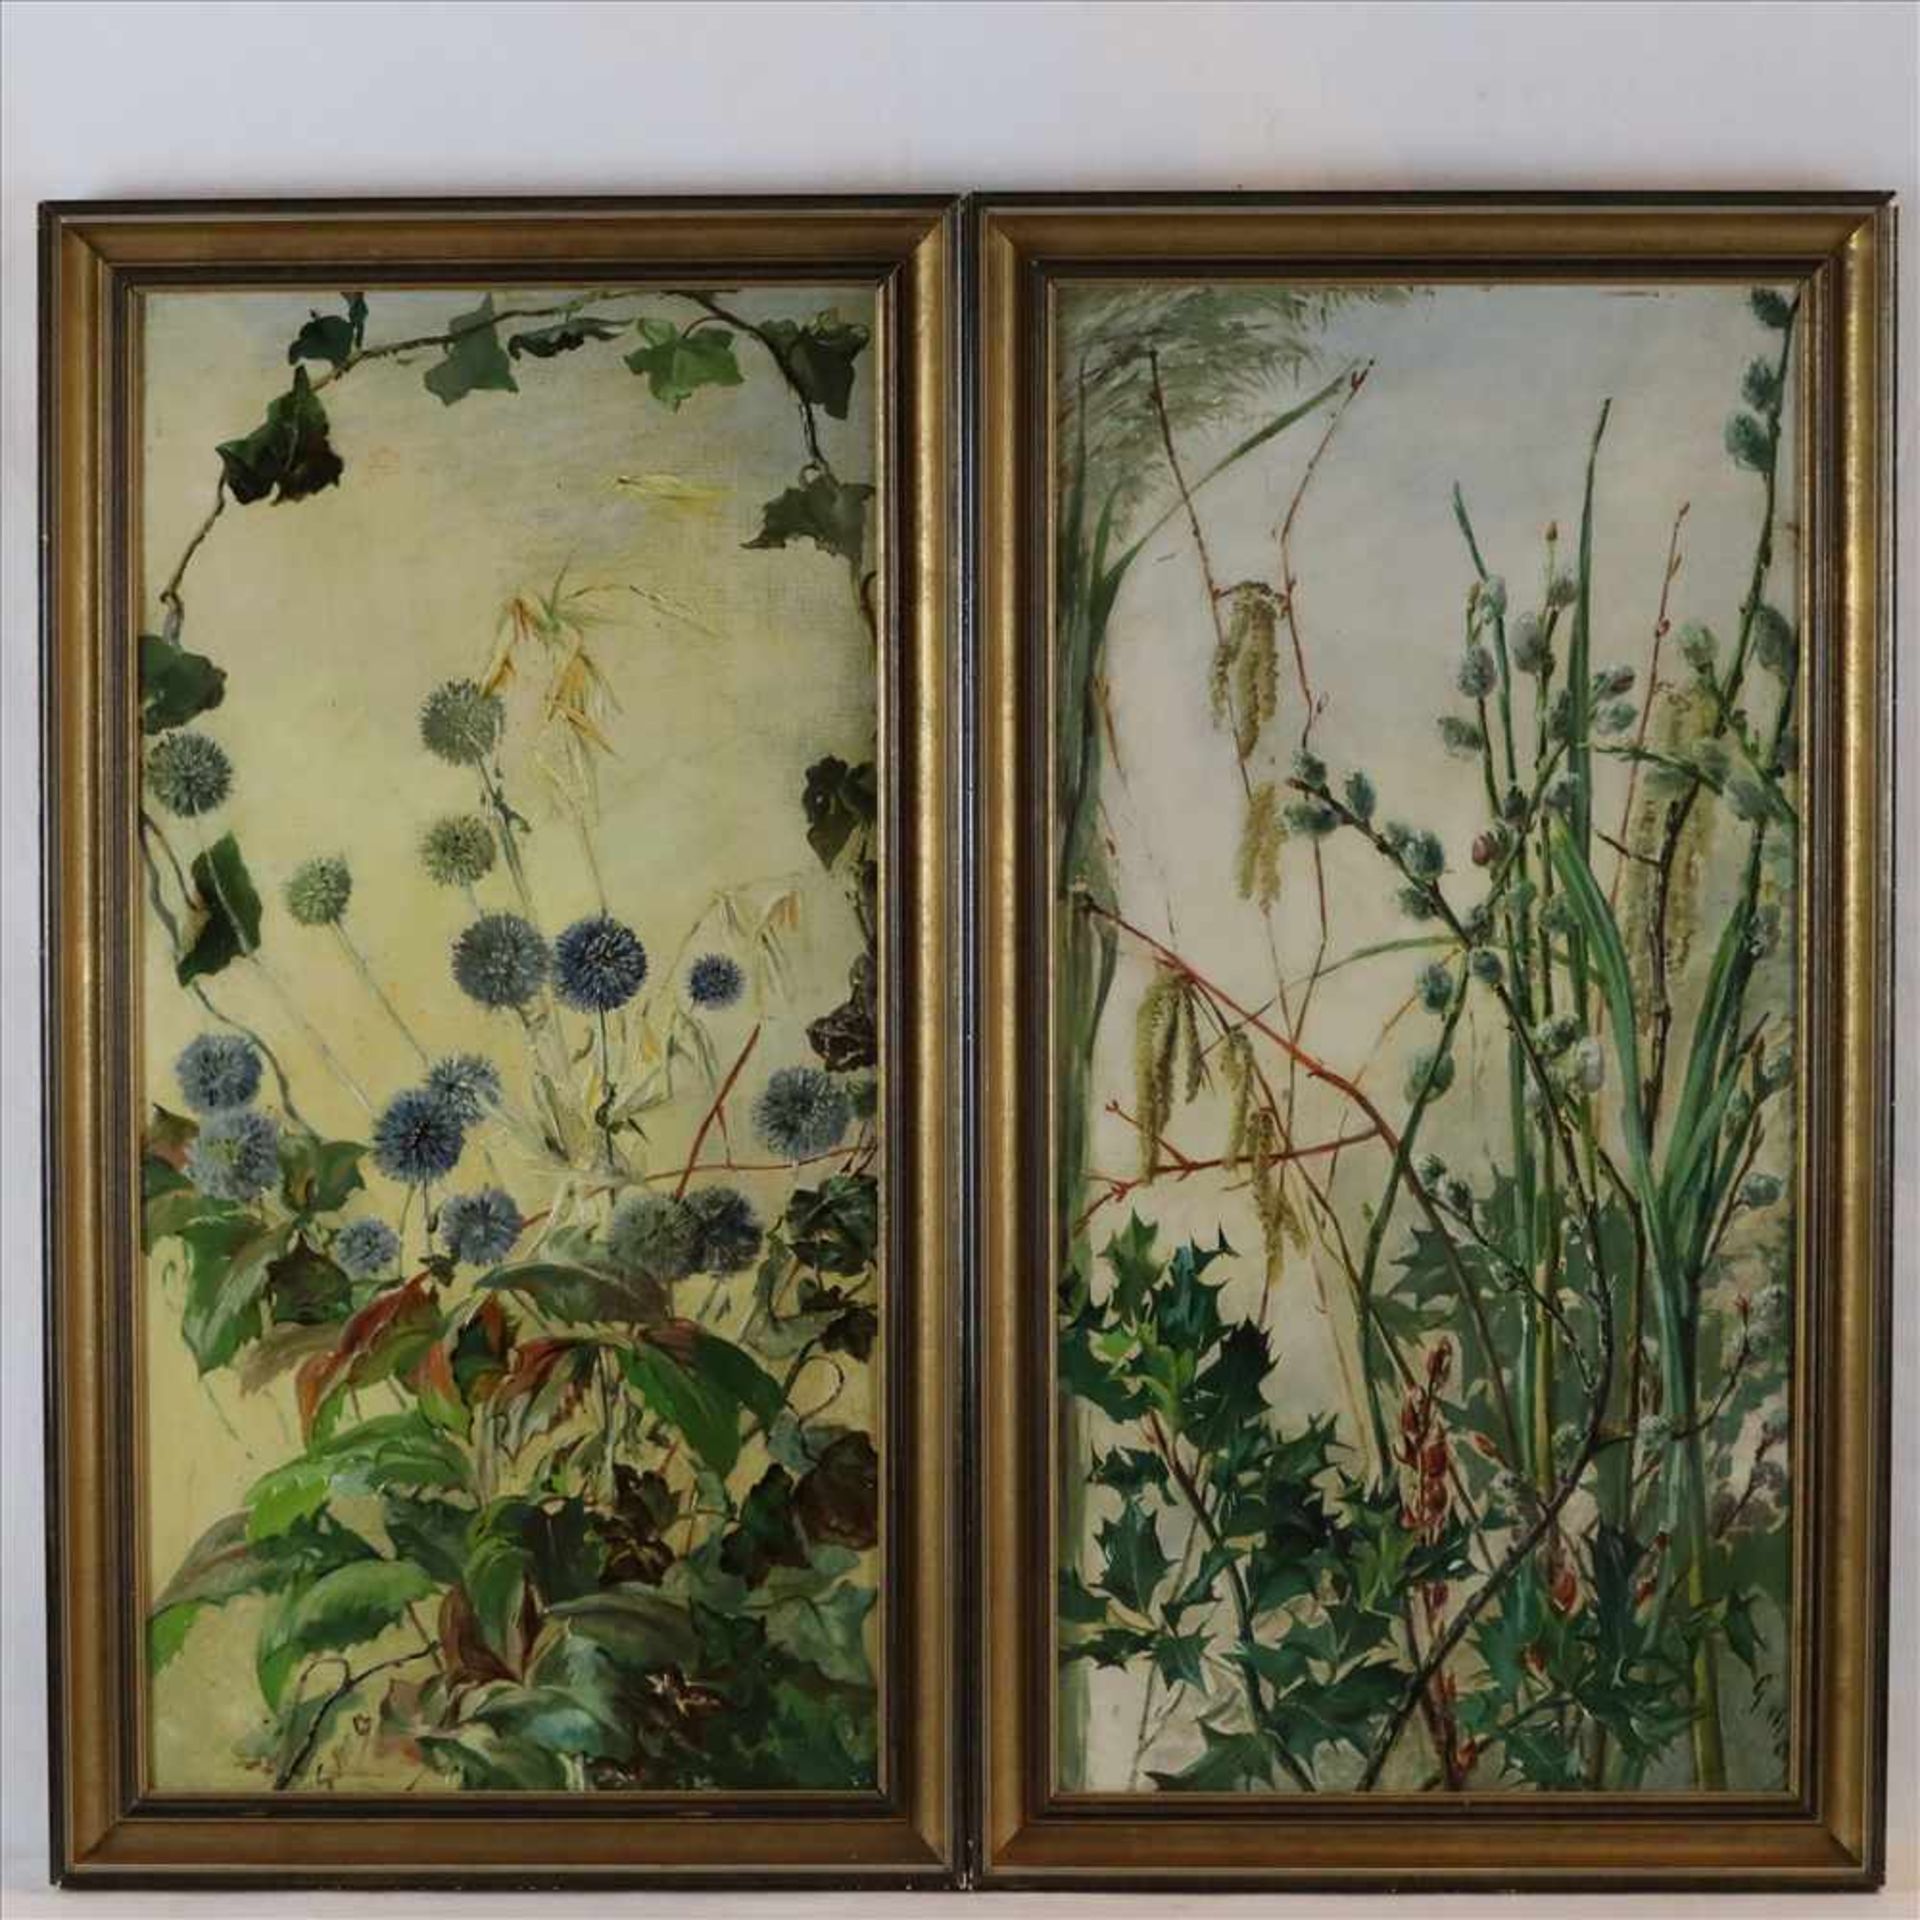 Englischer Maler - Paar Pflanzendarstellungen, 19.Jh., Öl auf Karton, jeweils unleserlich